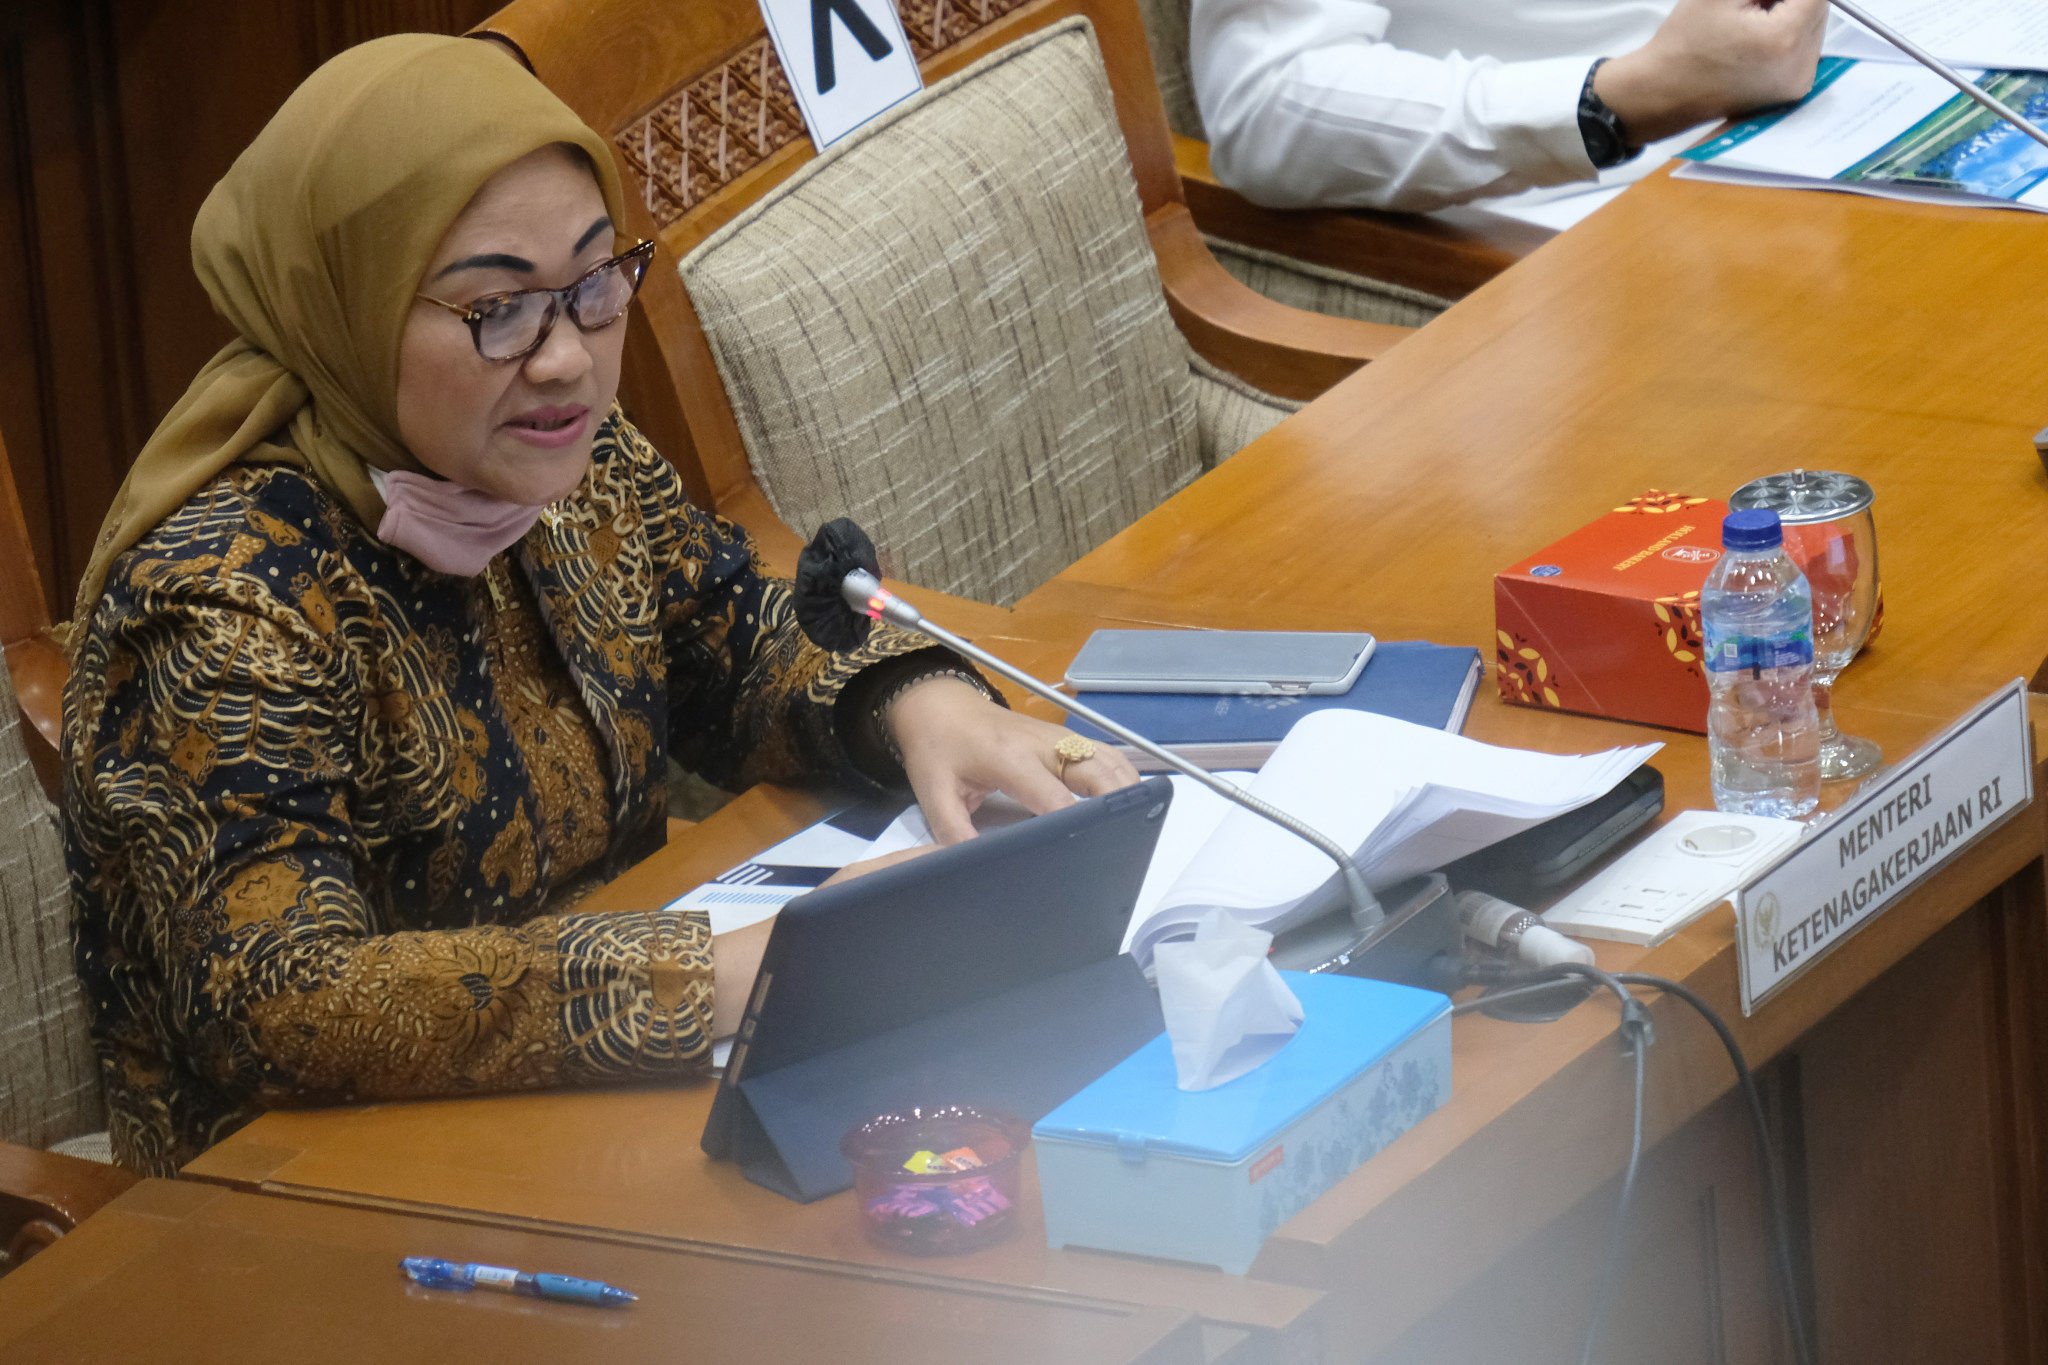 <p>Menteri Ketenagakerjaan (Menaker) Ida Fauziyah memyampaikan  paparannya pada rapat kerja dengan Komisi IX DPR di Kompleks Parlemen, Senayan, Jakarta, Rabu, 8 Juli 2020. Rapat tersebut membahas Perlindungan pemerintah terhadap ketahanan struktur ketenagakerjaan pada Pandemi Covid-19, Langkah Strategis Pemerintah dalam penciptaan lapangan pekerjaan pada Tahun 2021 pada Proyek Strategis Nasional (PSN) dan Usaha Mikro Kecil Menengah (UMKM), dan Penjelasan mengenai grand design Program Tapera (Tabungan Perumahan Rakyat) berdasarkan PP No.25 Tahun 2020 tentang Penyelenggaraan Tabungan Perumahan Rakyat dengan Program Fasilitas Manfaat Layanan Tambahan (MLT) bagi pekerja sebagaimana diatur dalam PP No.46 Tahun 2015 tentang Penyelenggaraan Program Jaminan Hari Tua (JHT). Foto: Ismail Pohan/TrenAsia</p>
